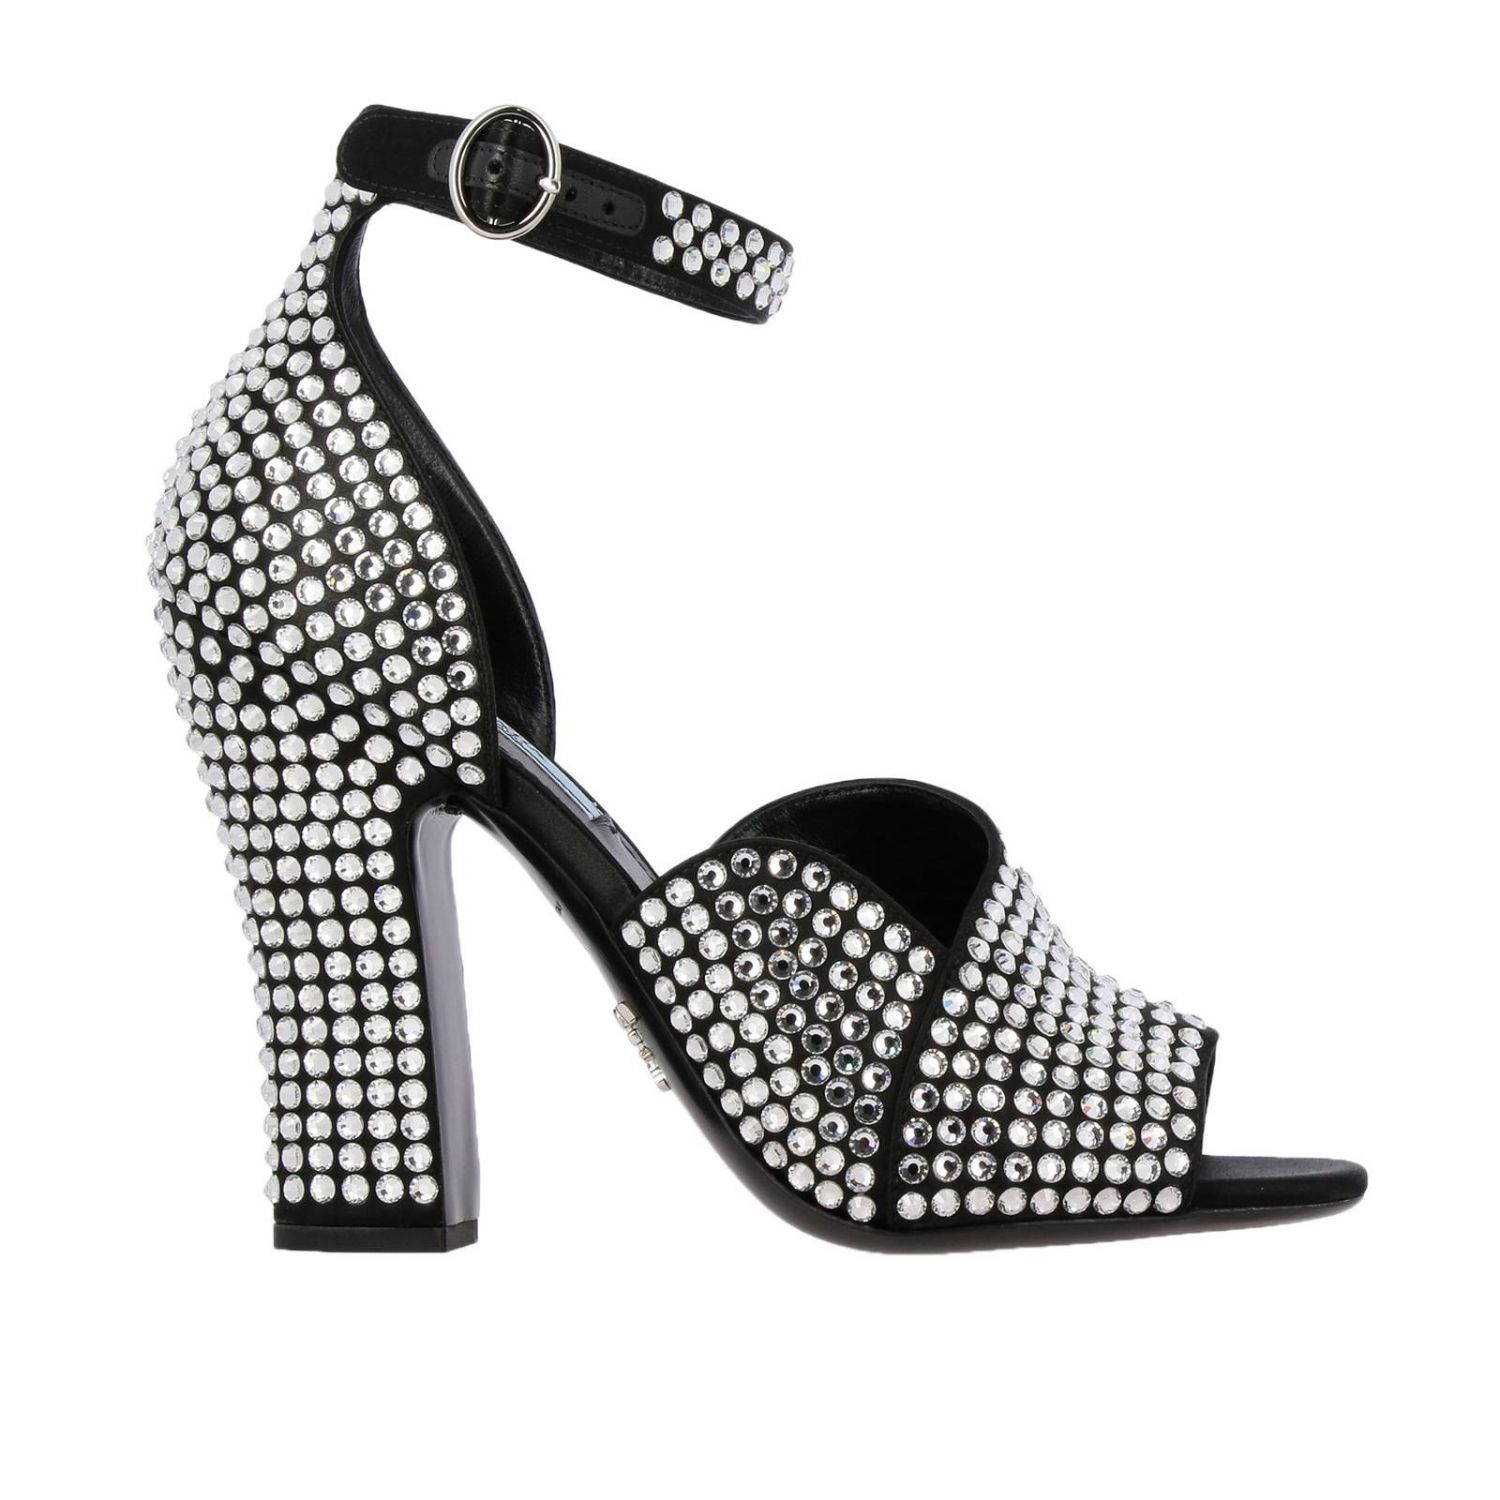 Босоножки на каблуке Prada: Сандалии Prada с открытым носком и кристаллами all over черный 1